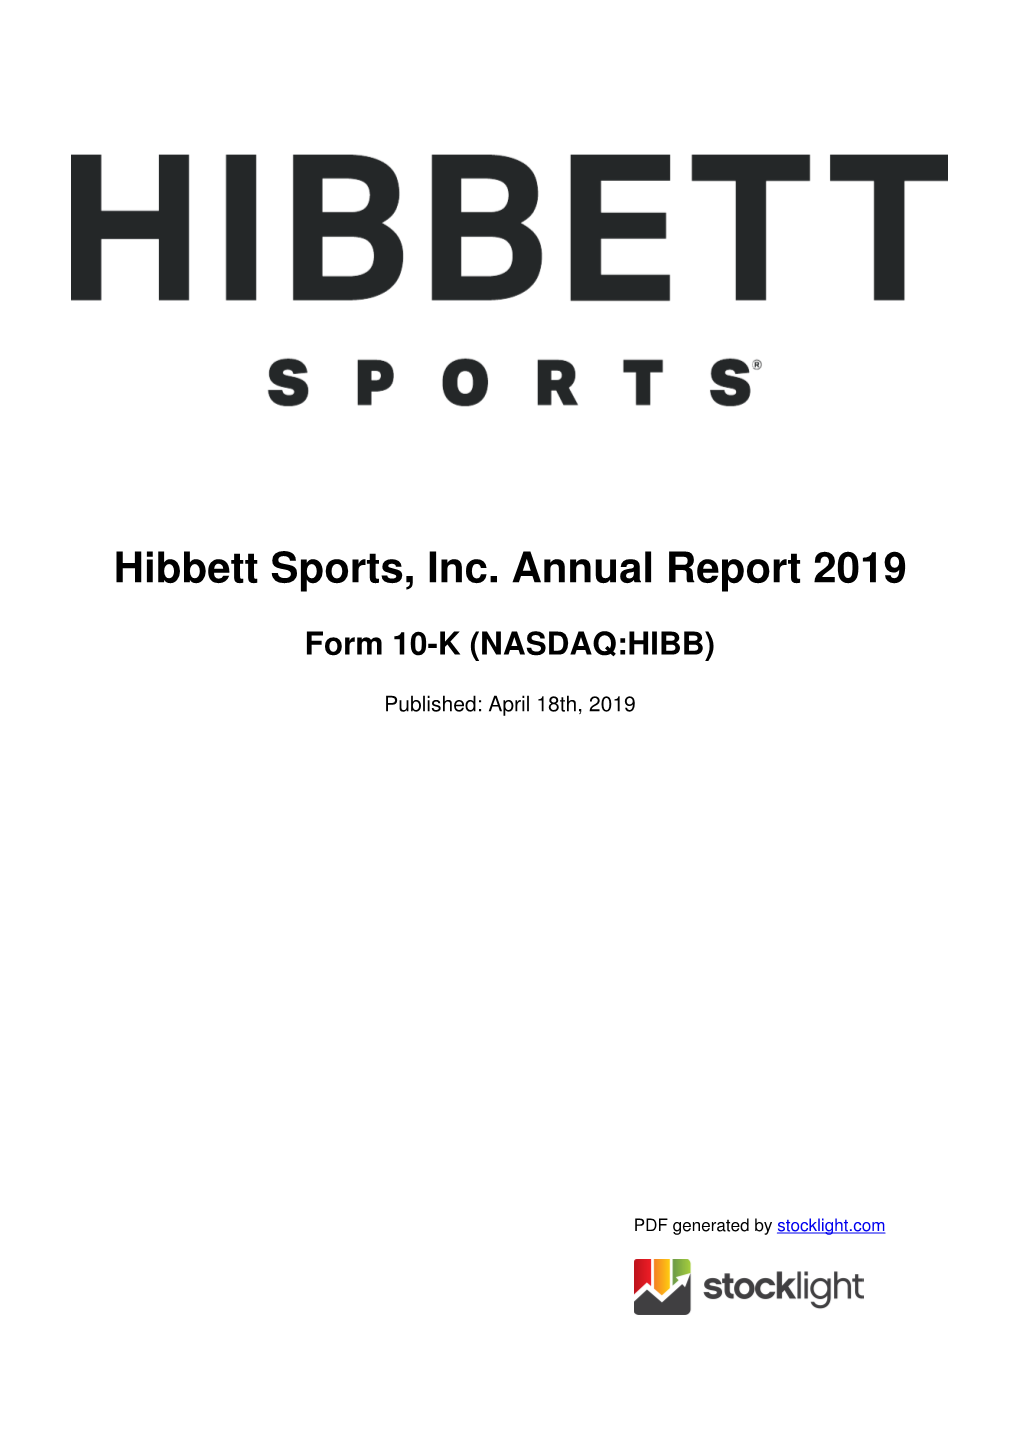 Hibbett Sports, Inc. Annual Report 2019 Form 10-K (NASDAQ:HIBB)